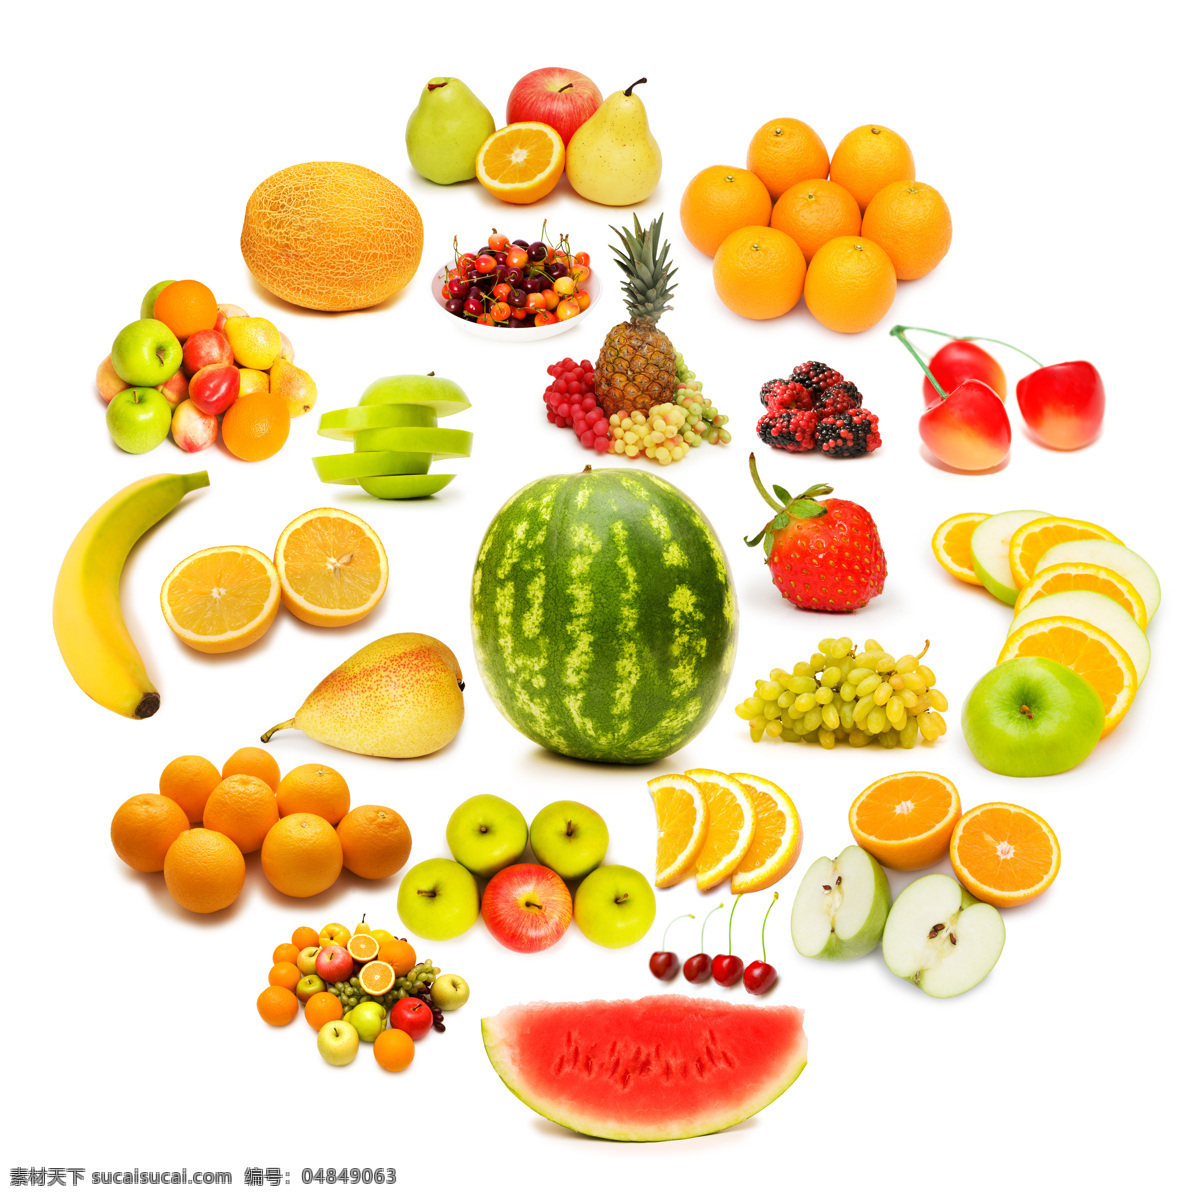 各种水果 食物 美食 可口 好味道 圆形 水果 西瓜 橙子 香蕉 水果蔬菜 餐饮美食 白色